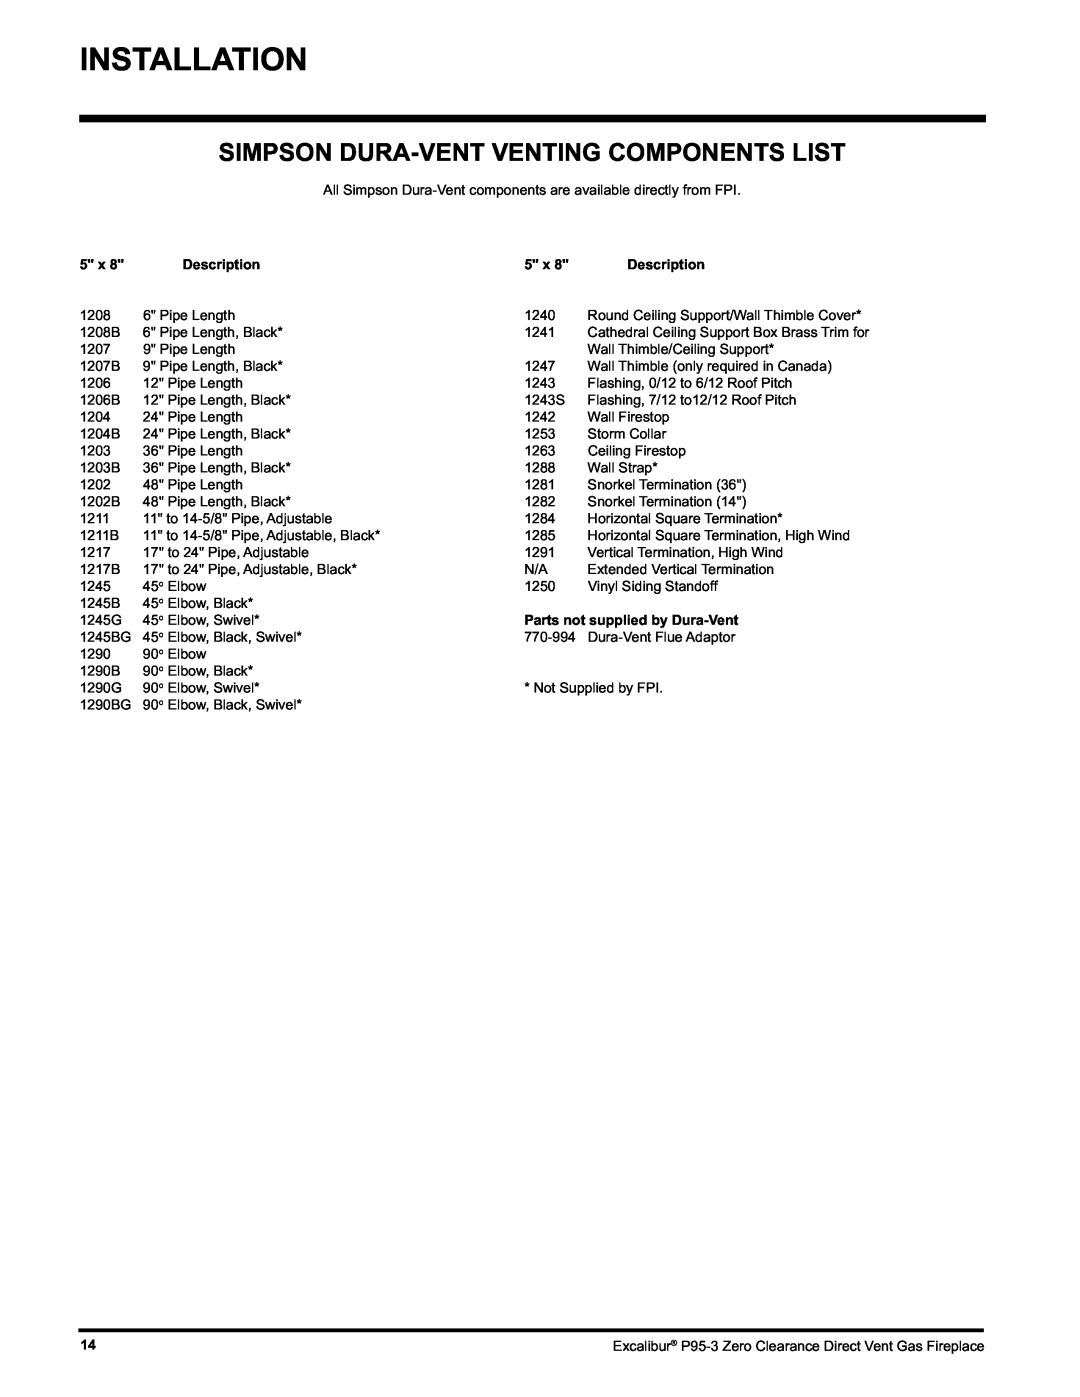 Excalibur electronic P95-NG3, P95-LP3 Installation, Simpson Dura-Ventventing Components List, Description 